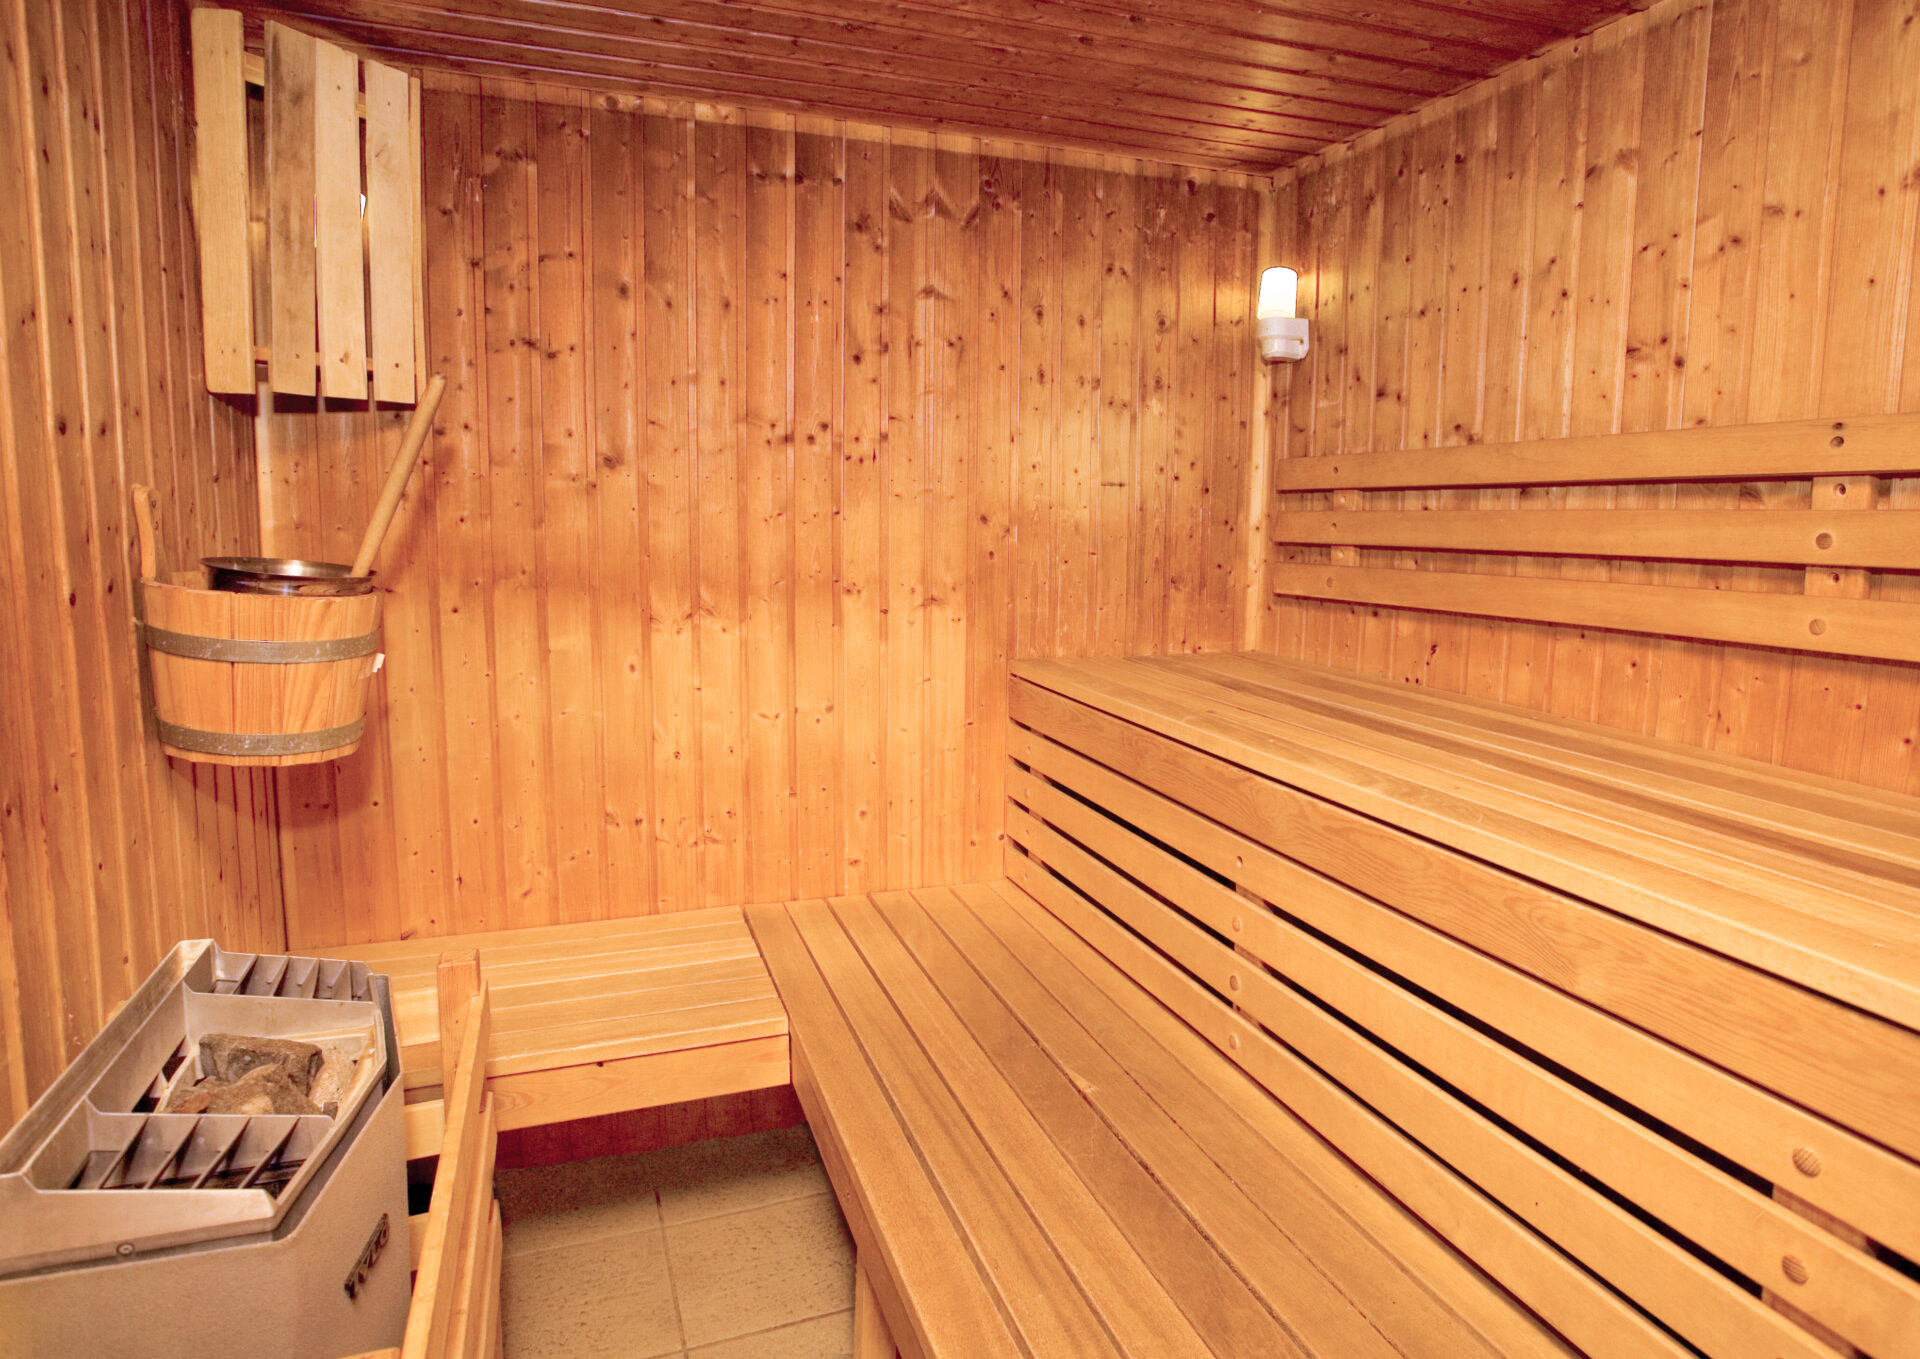 The sauna at MMV Les Brevieres